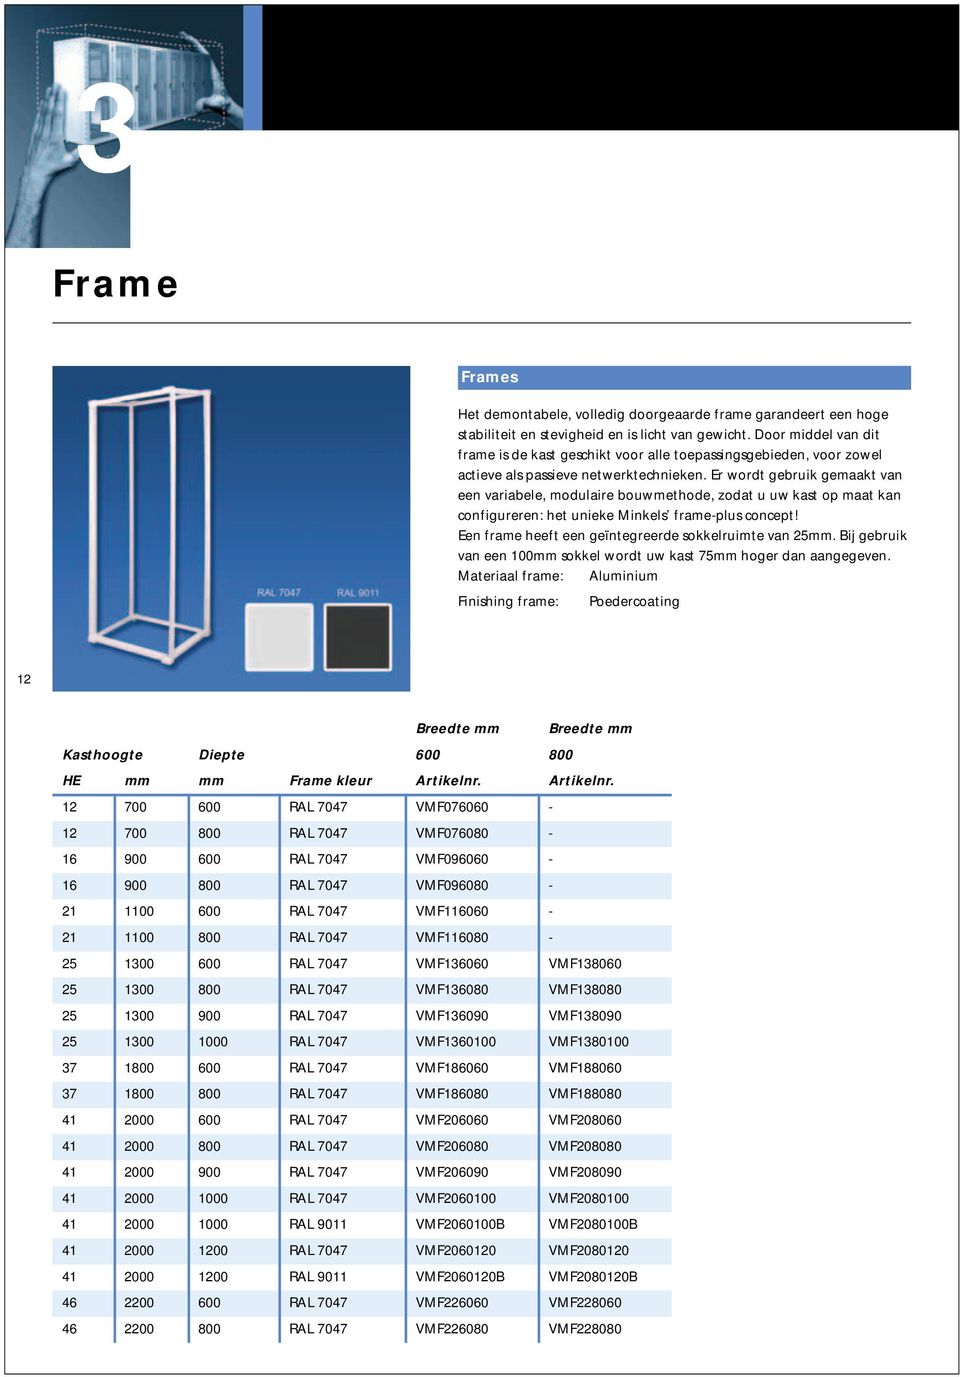 Er wordt gebruik gemaakt van een variabele, modulaire bouwmethode, zodat u uw kast op maat kan configureren: het unieke Minkels frame-plus concept!